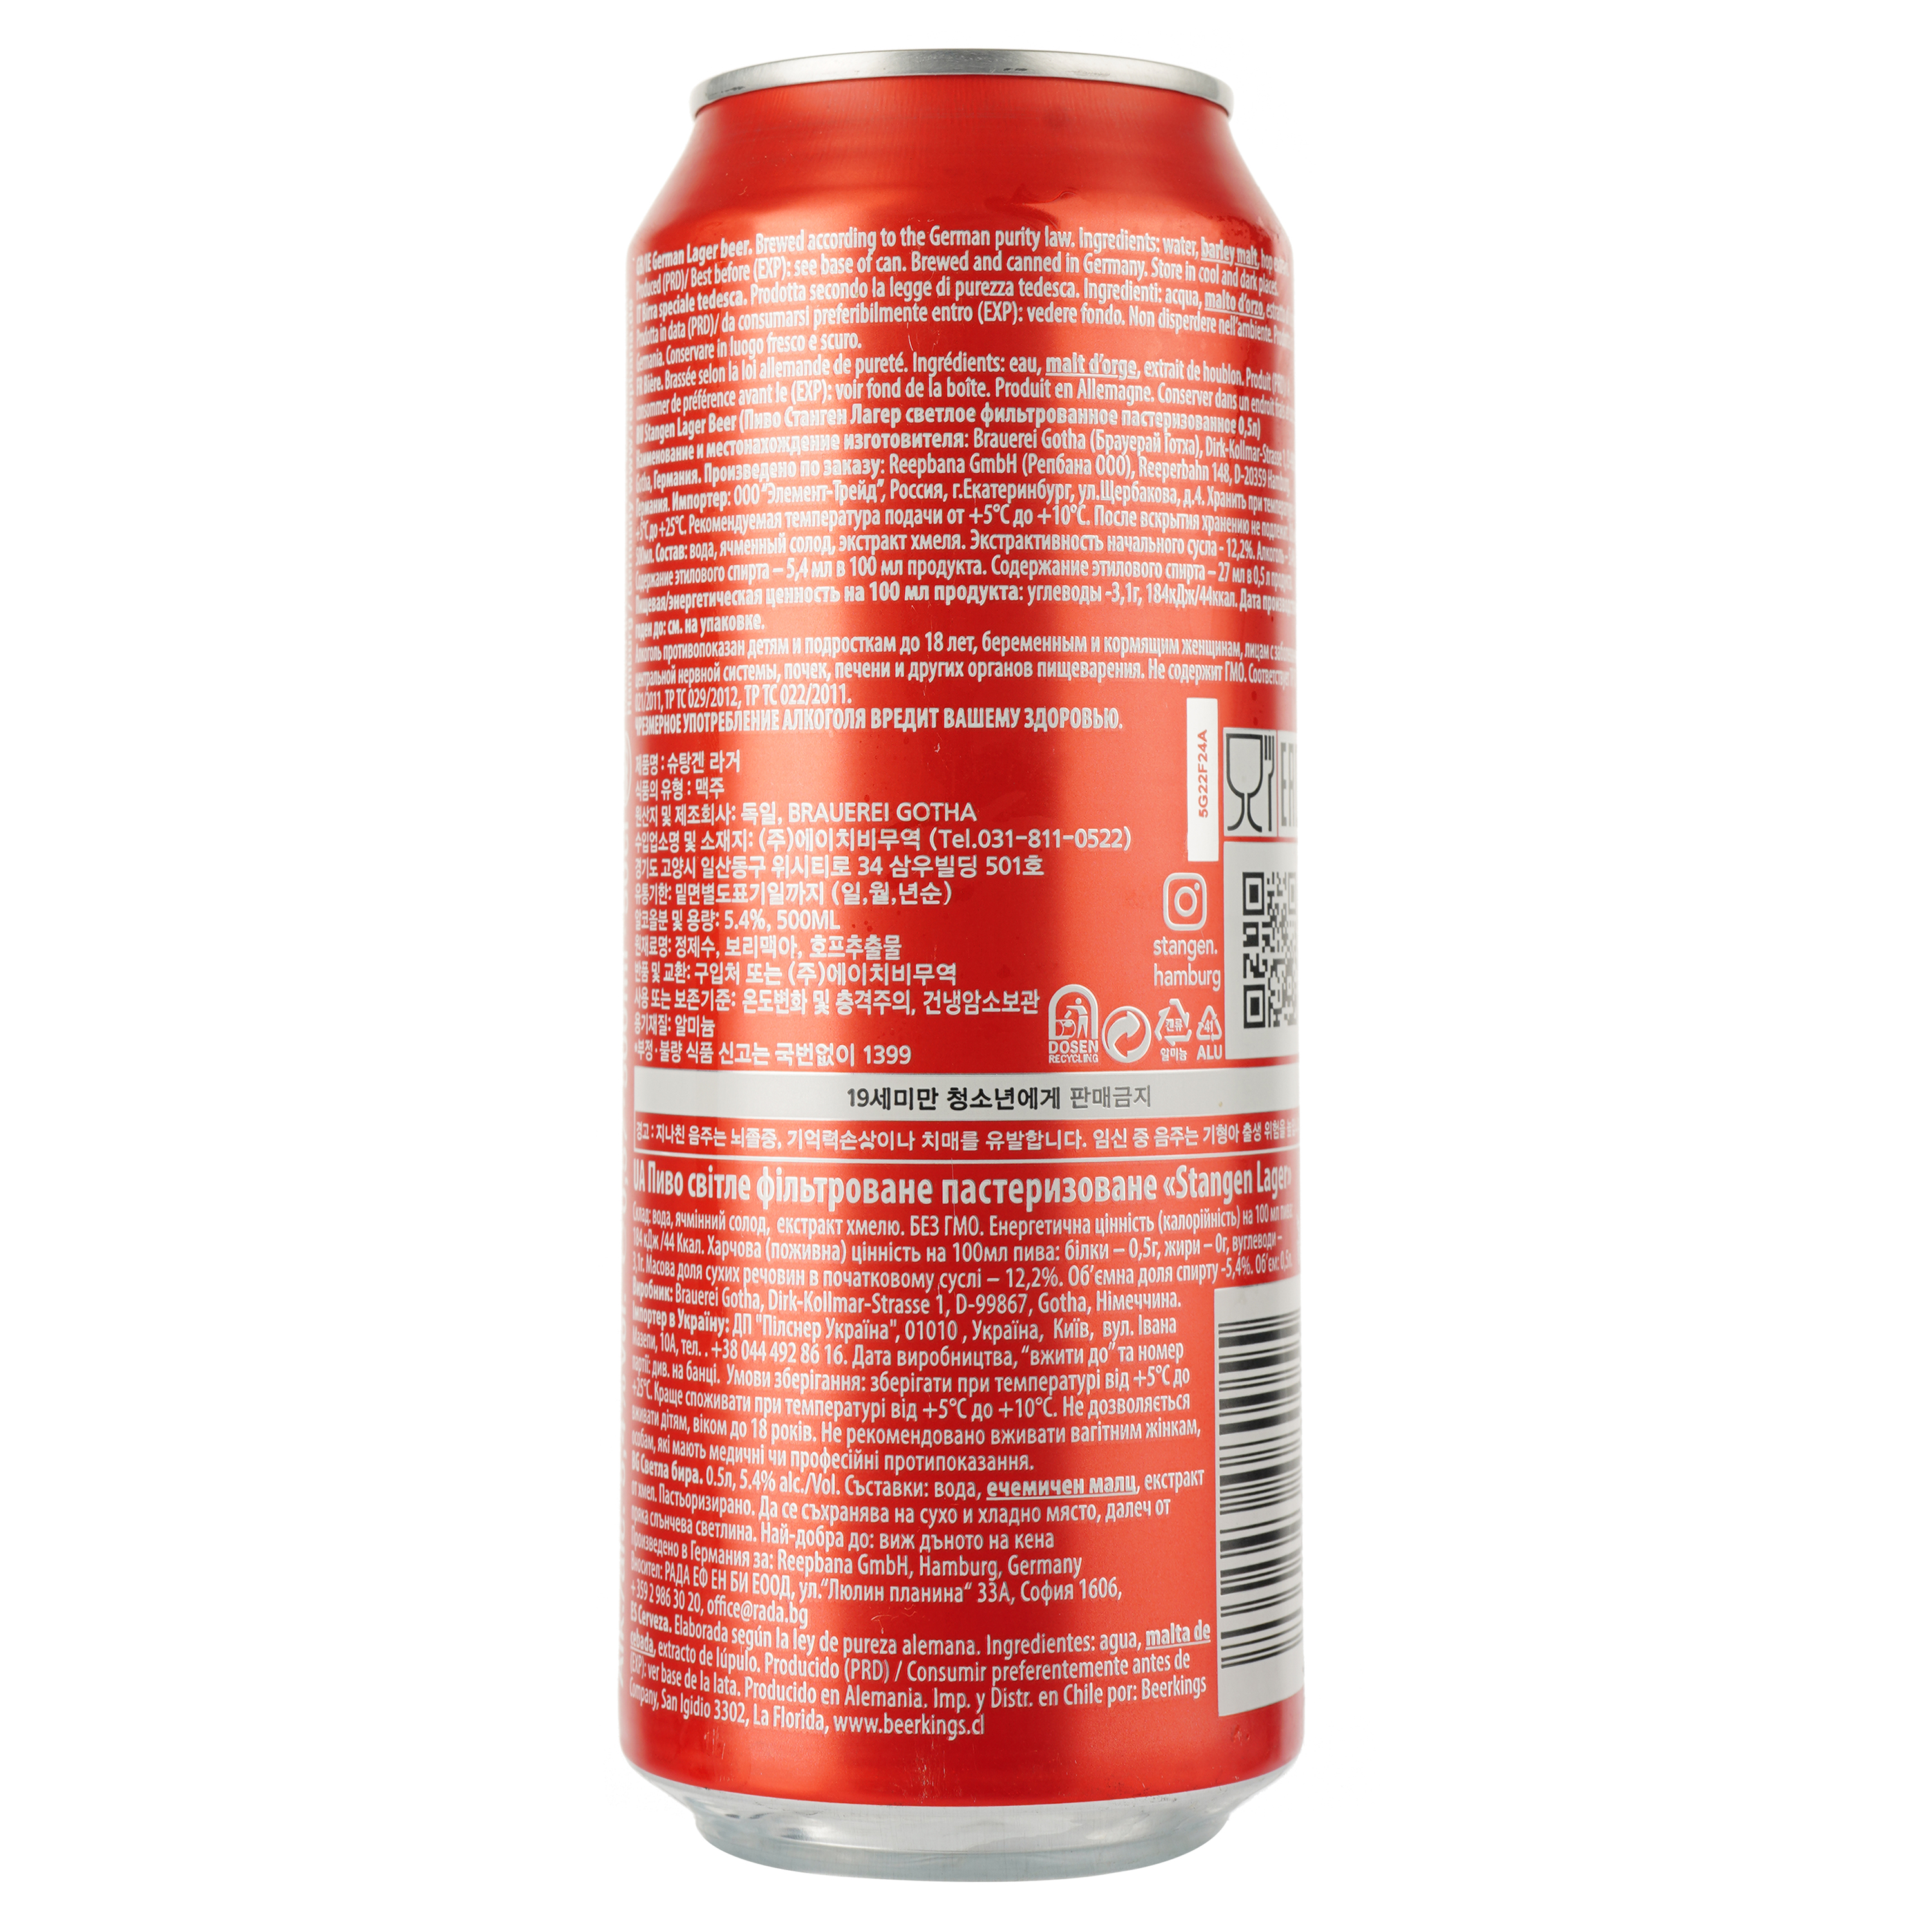 Пиво Stangen Lager bier, светлое, фильтрованное, 5,4%, ж/б, 0,5 л - фото 2